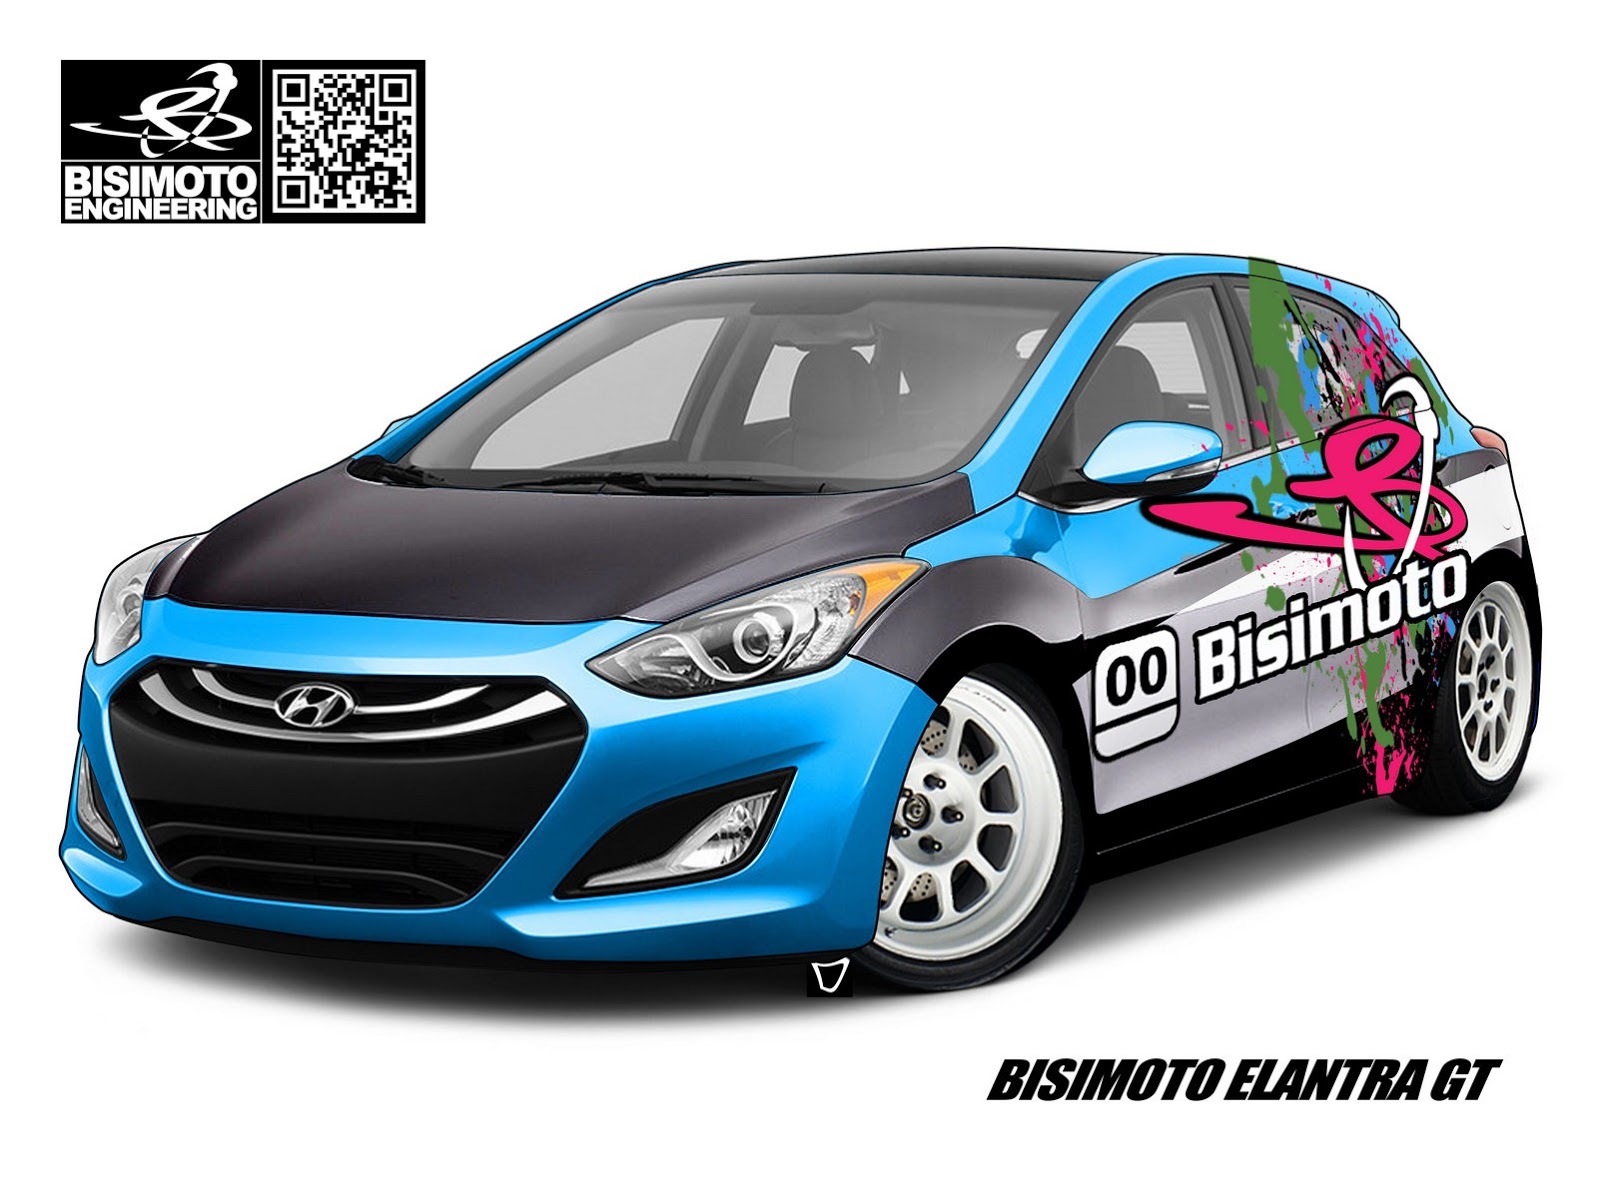 Bisimoto Engineering presents Hyundai Elantra GT tuning kit